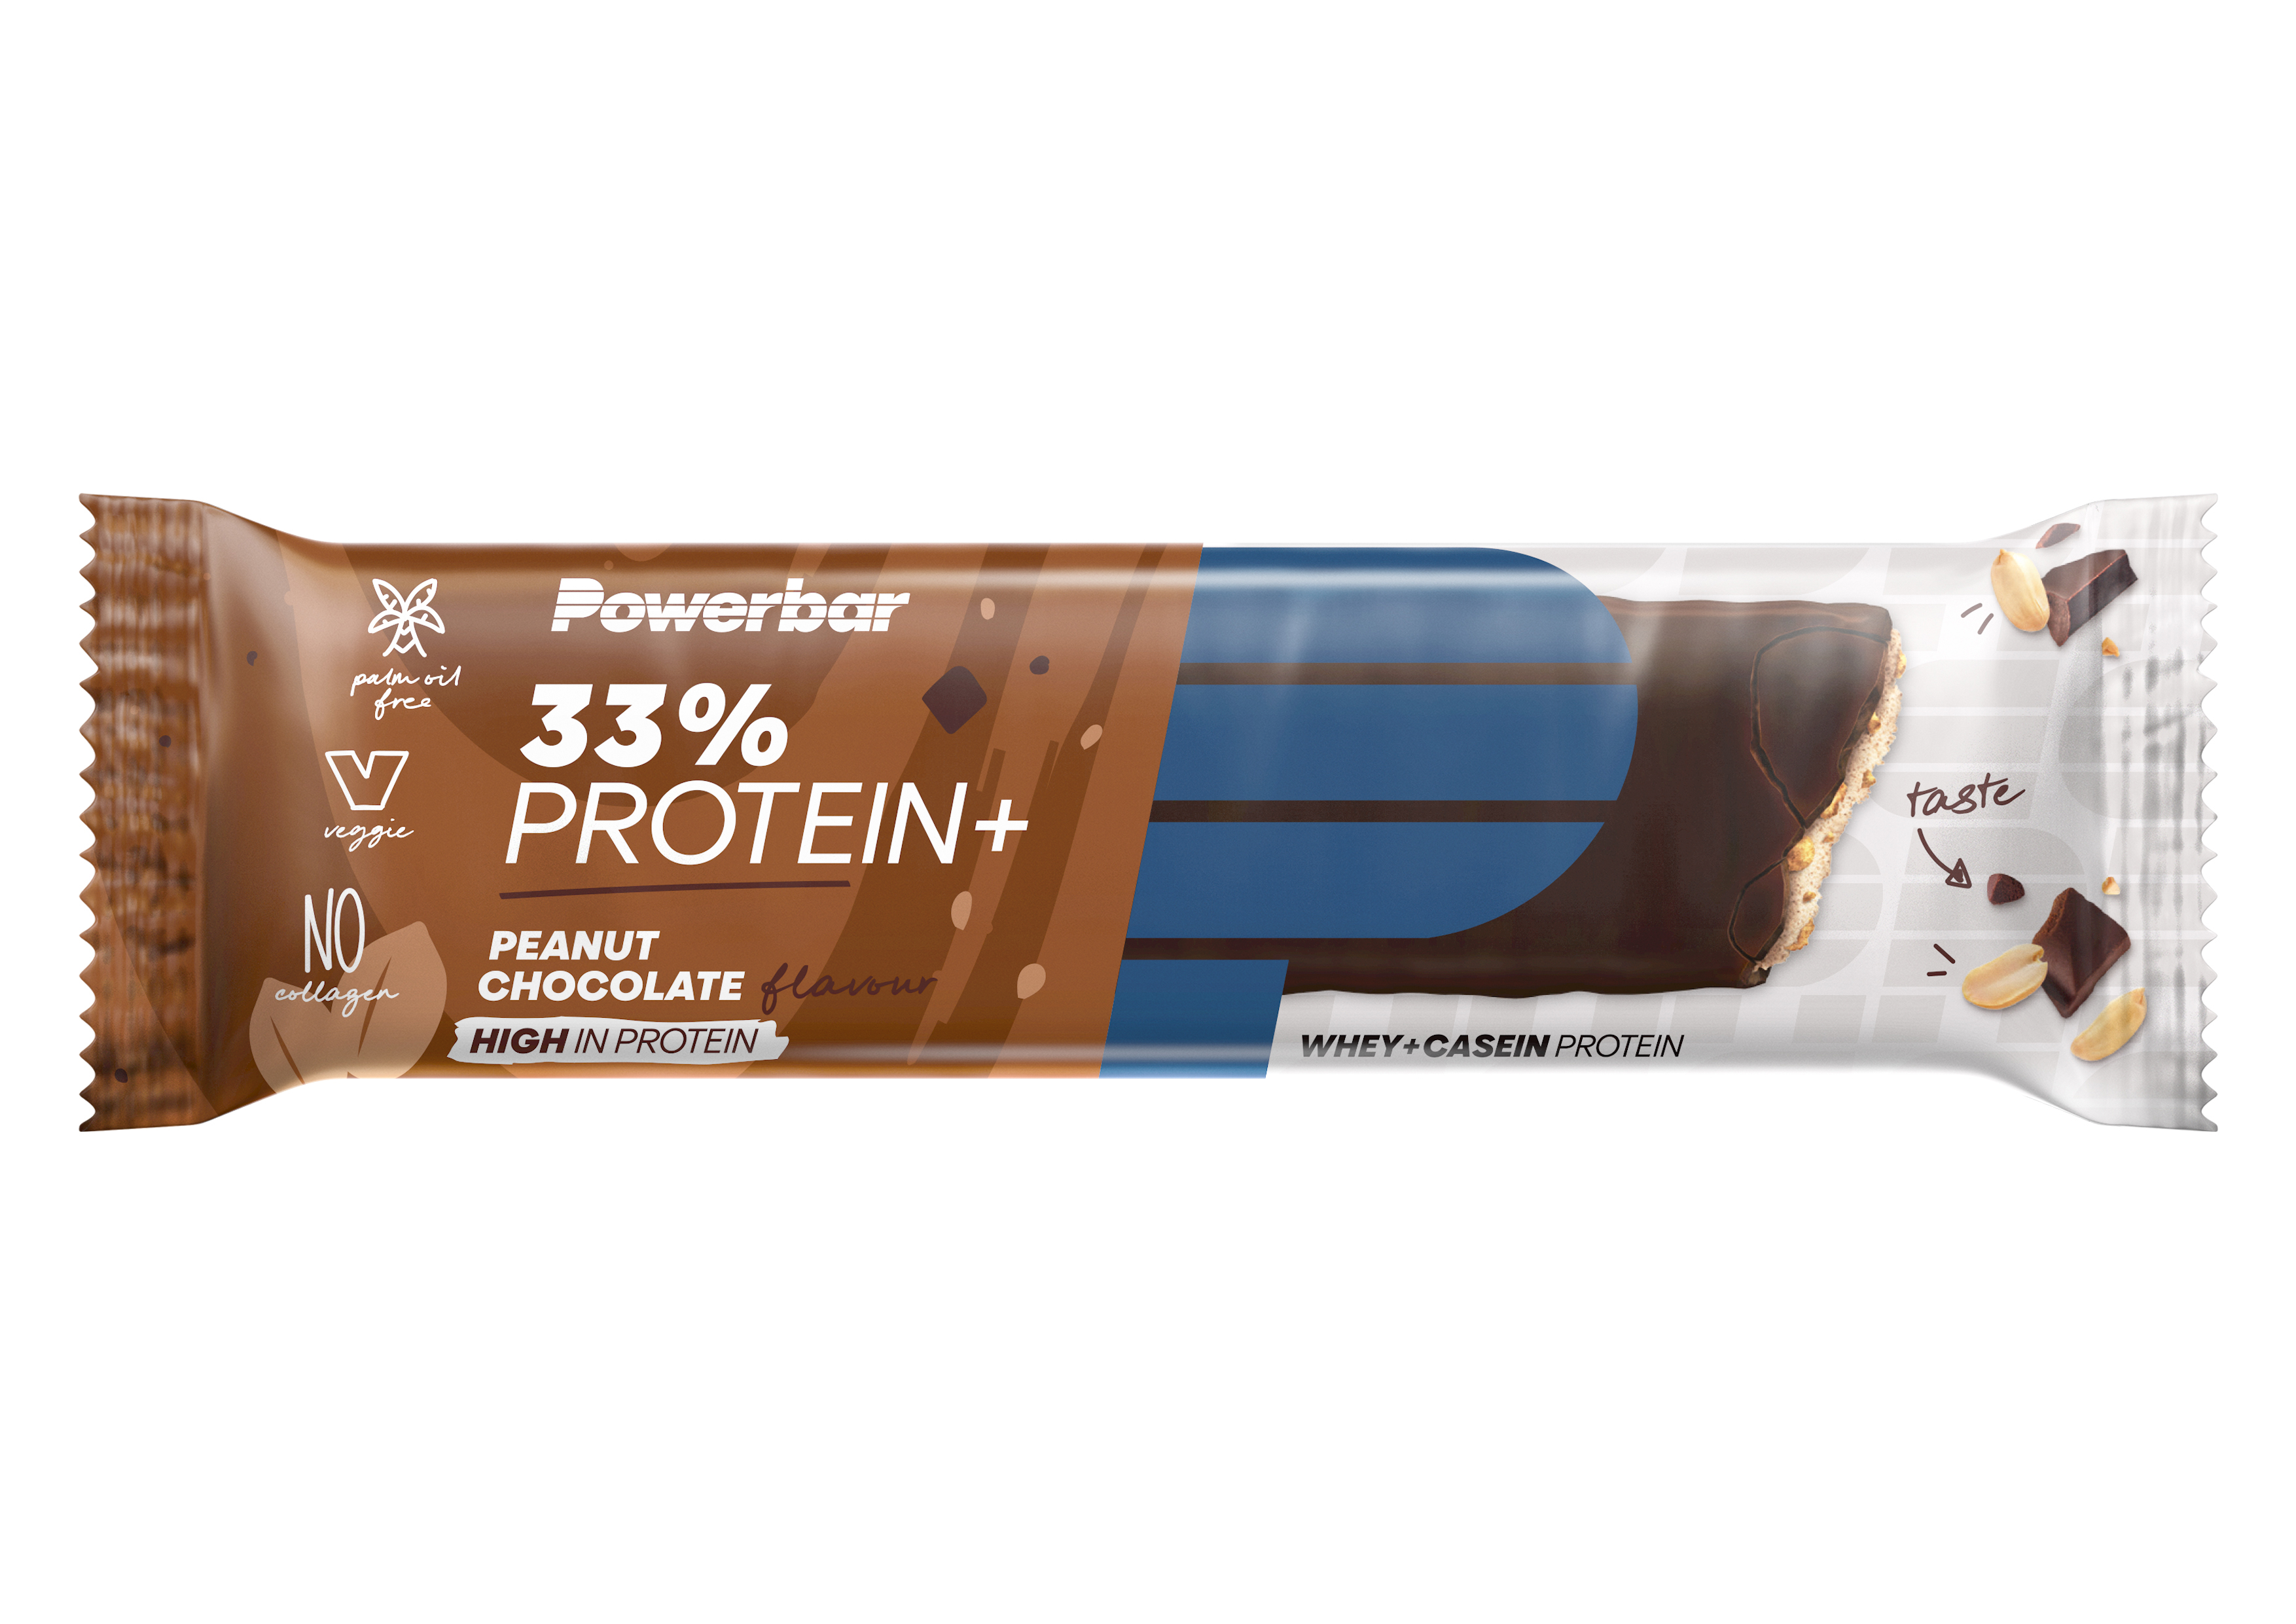 PowerBar 33% Protein Plus Bar (90g)